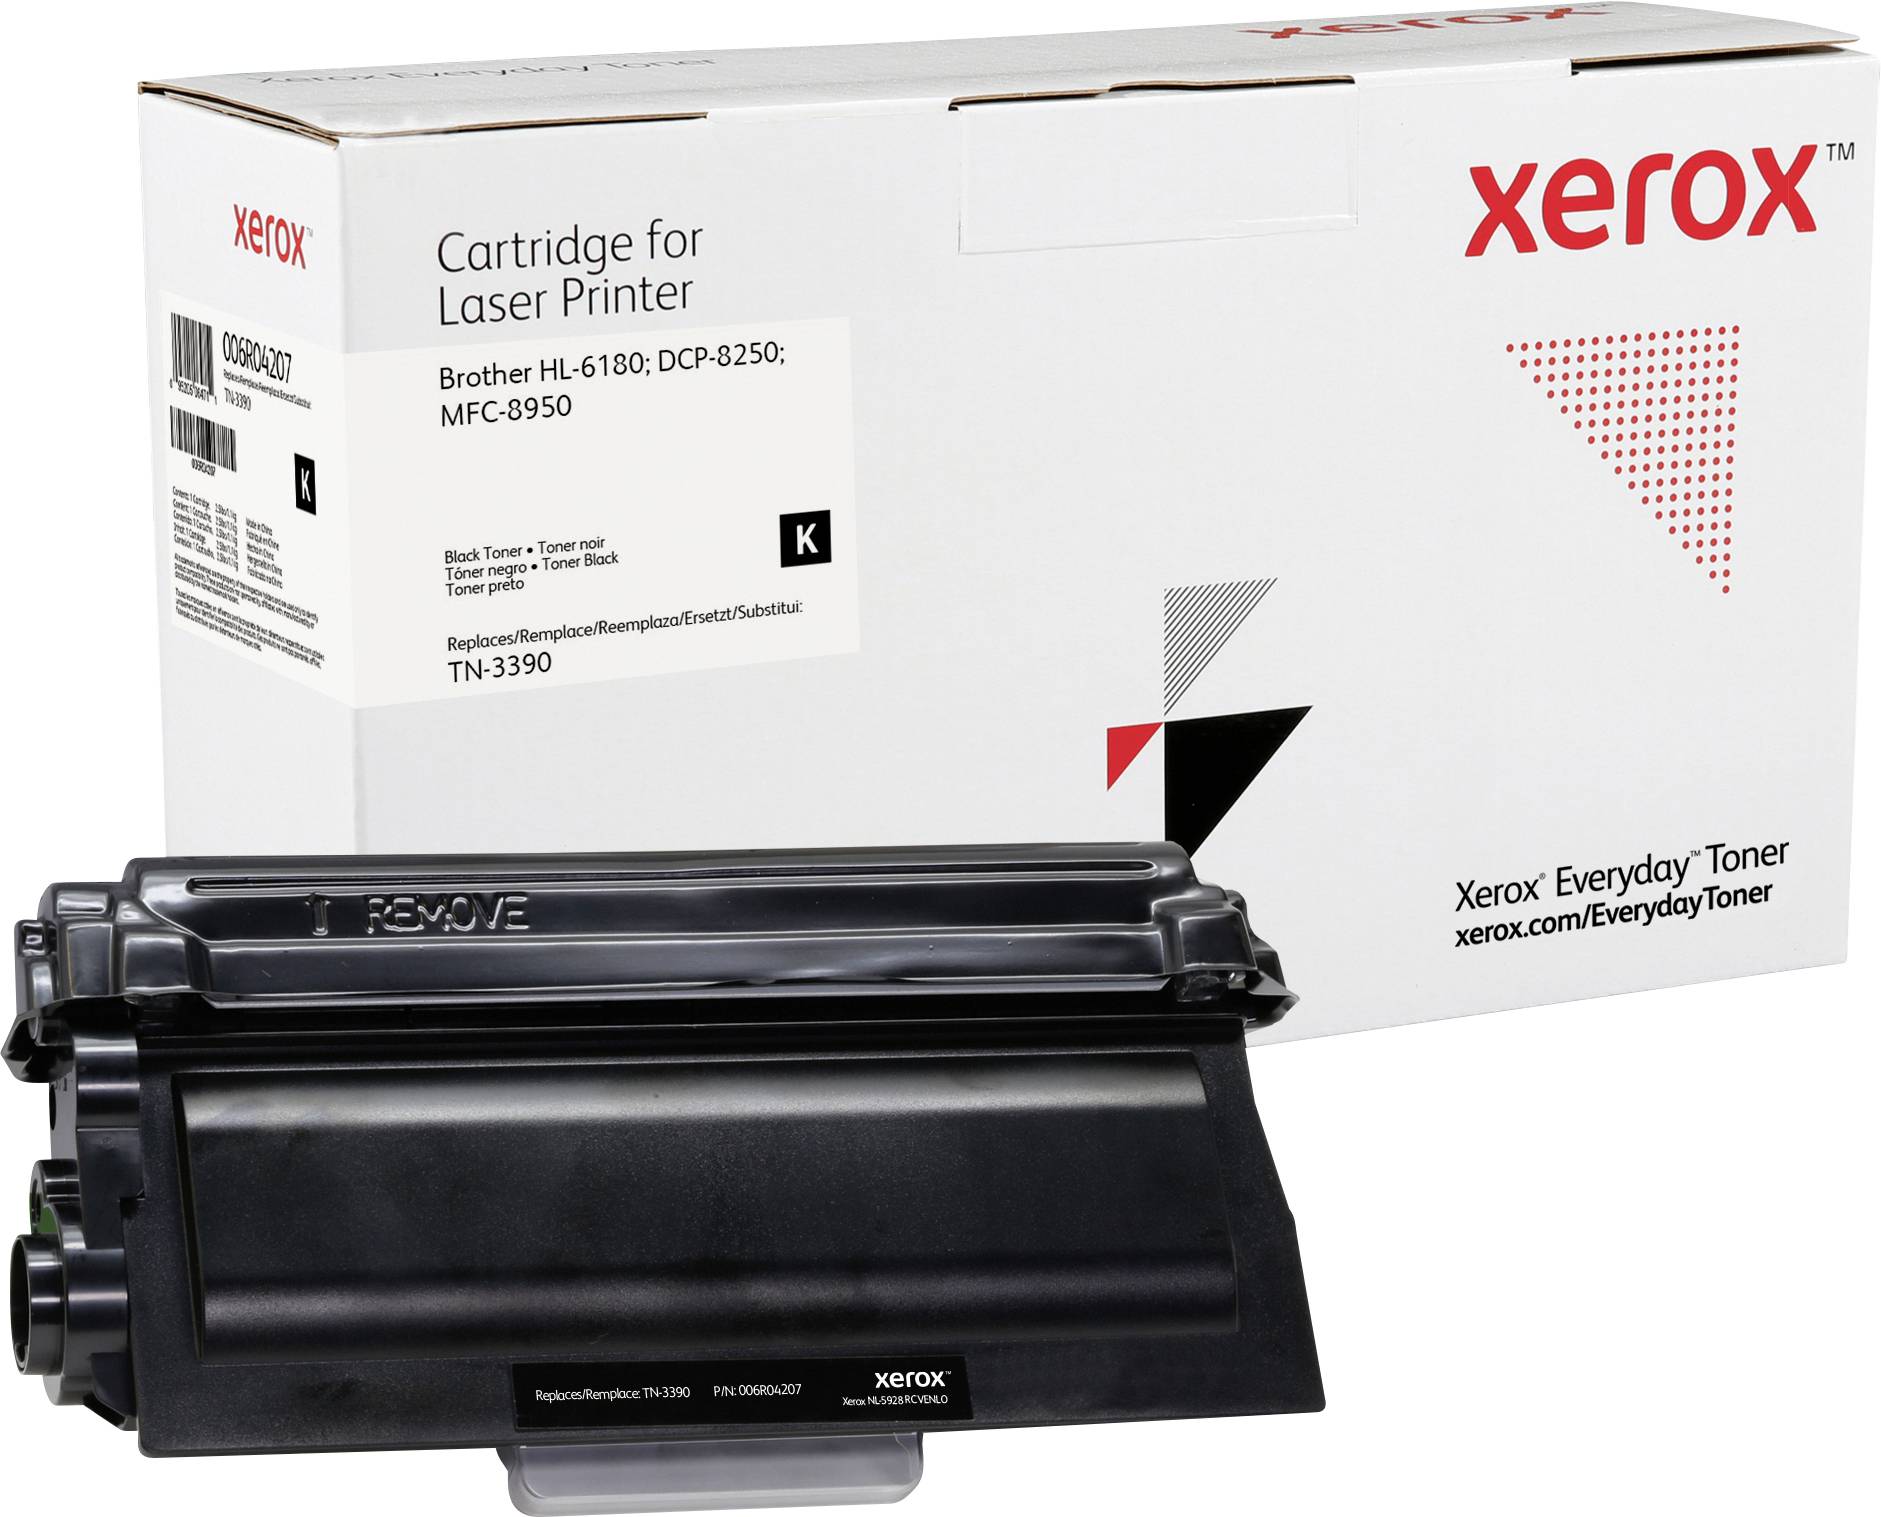 XEROX Everyday - Toner Schwarz - ersetzt Brother TN-3390 für Brother HL-6180; DCP-8250; MFC-8950 (00